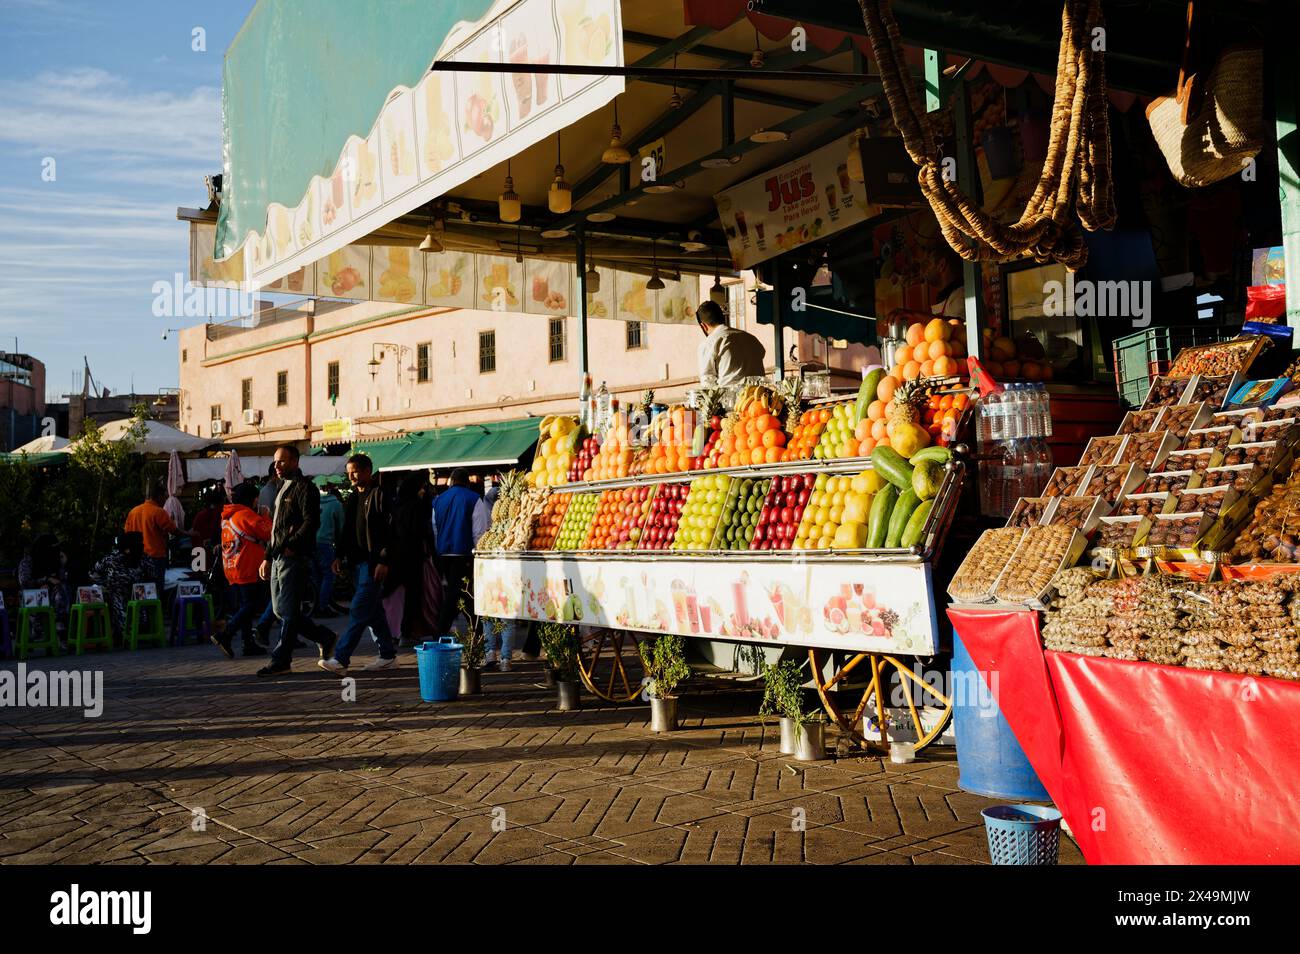 Succo vivace e frutta con banane, ananas, mele, arance, meloni, papaya e molto altro ancora. In piazza Jemaa el-Fnaa. Foto Stock